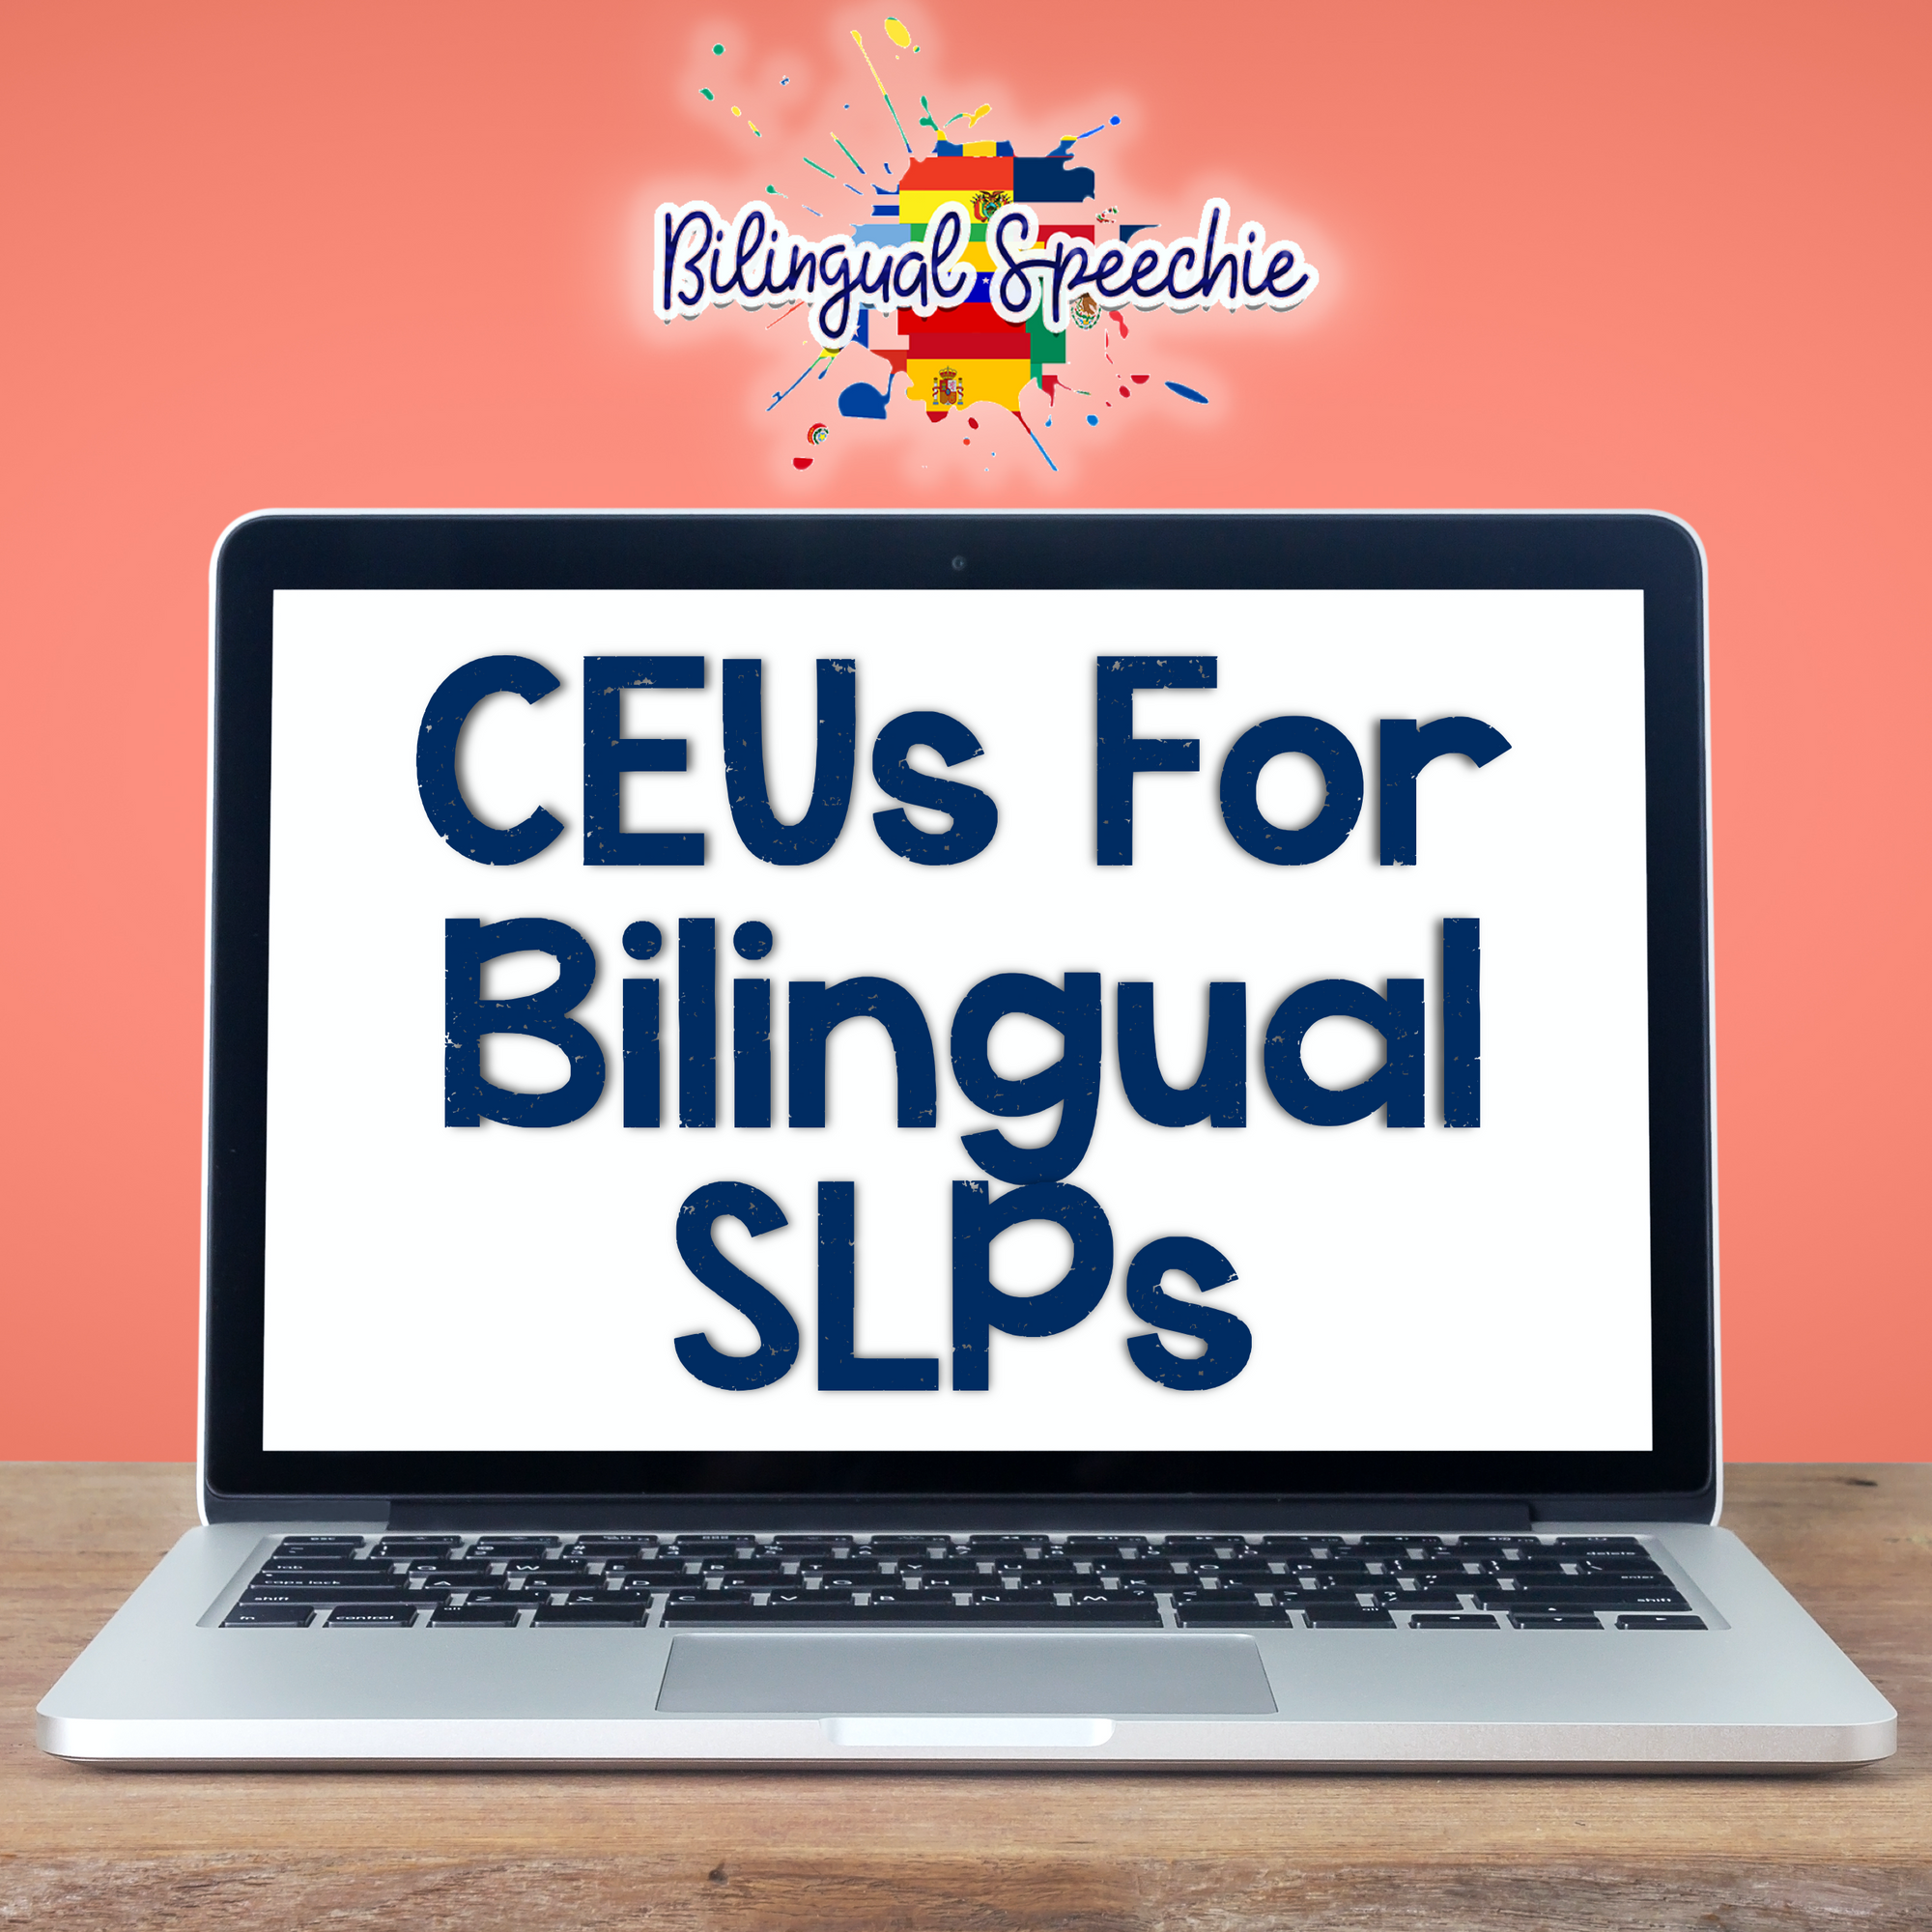 Where to Get CEUs for Bilingual SLPs